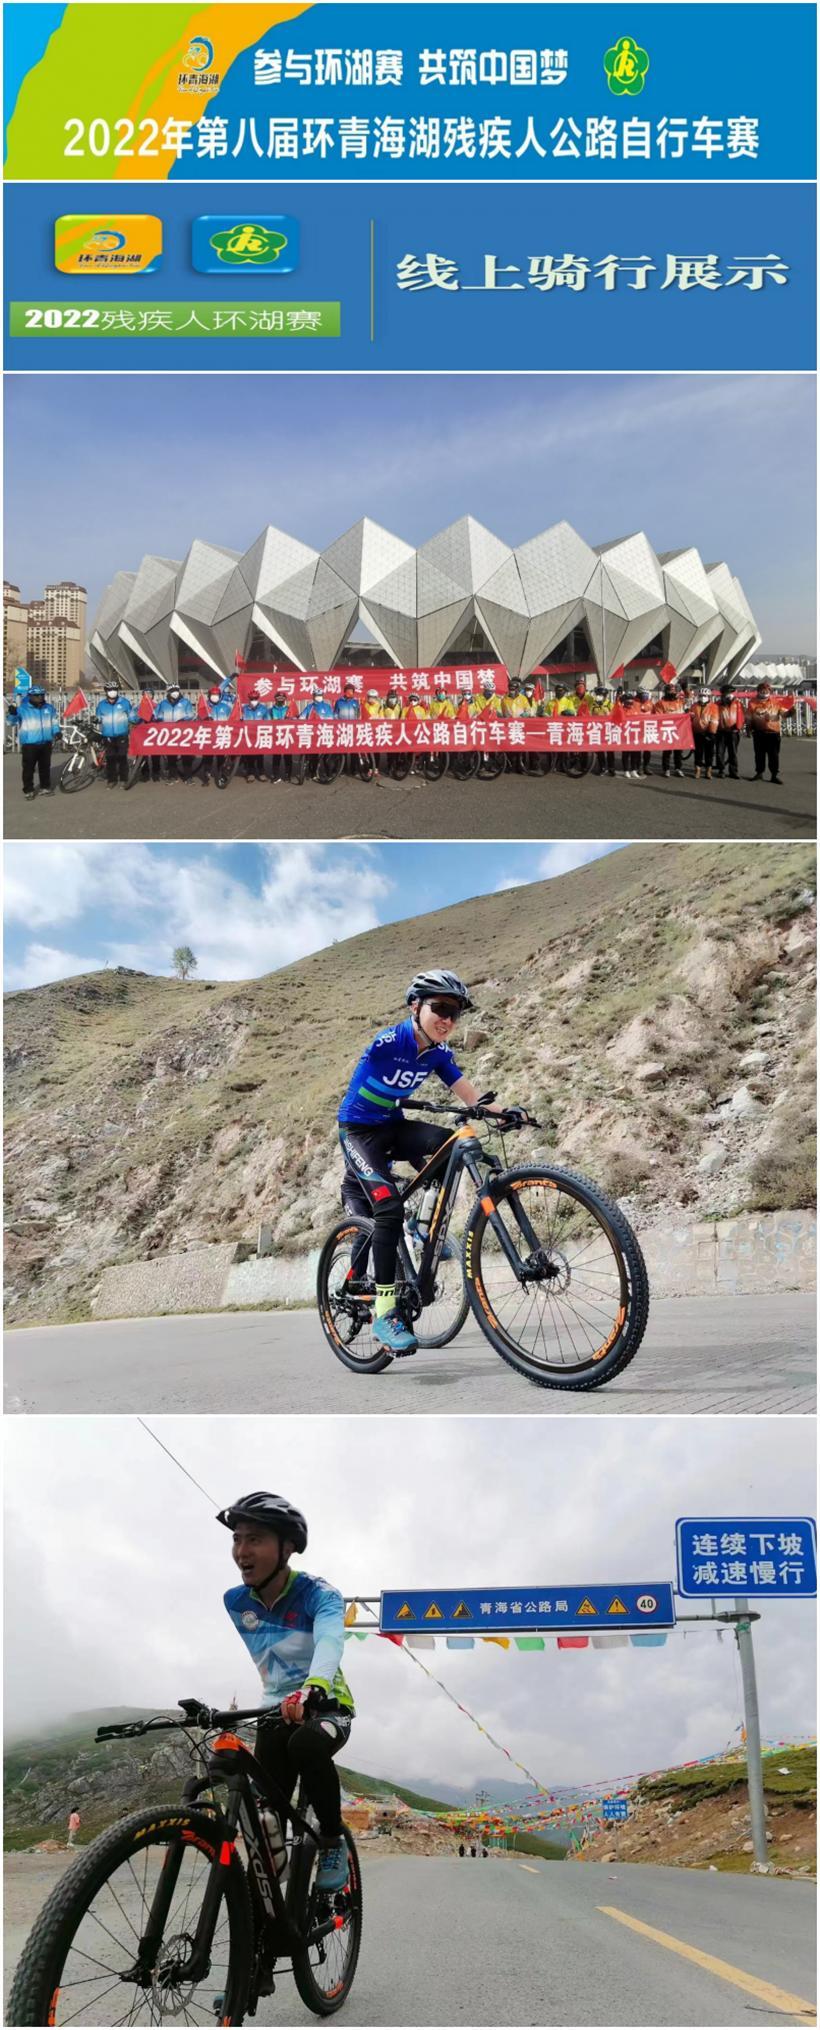 2022年第八届环青海湖残疾人公路自行车赛-青海省线上骑行展示活动